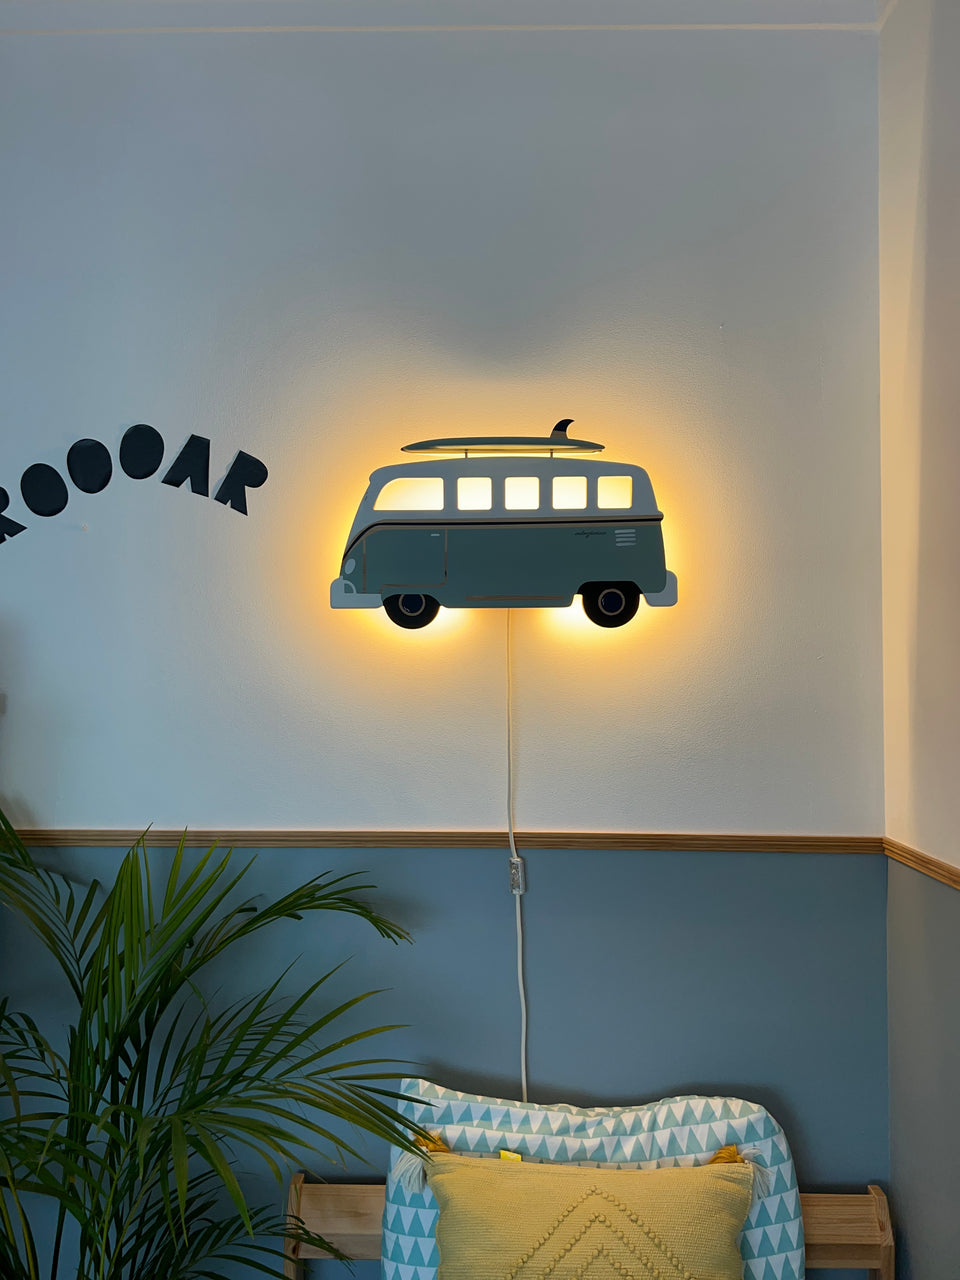 Candeeiro "Van Surf"  de parede Trend - Trend Van Surf wall lamp light